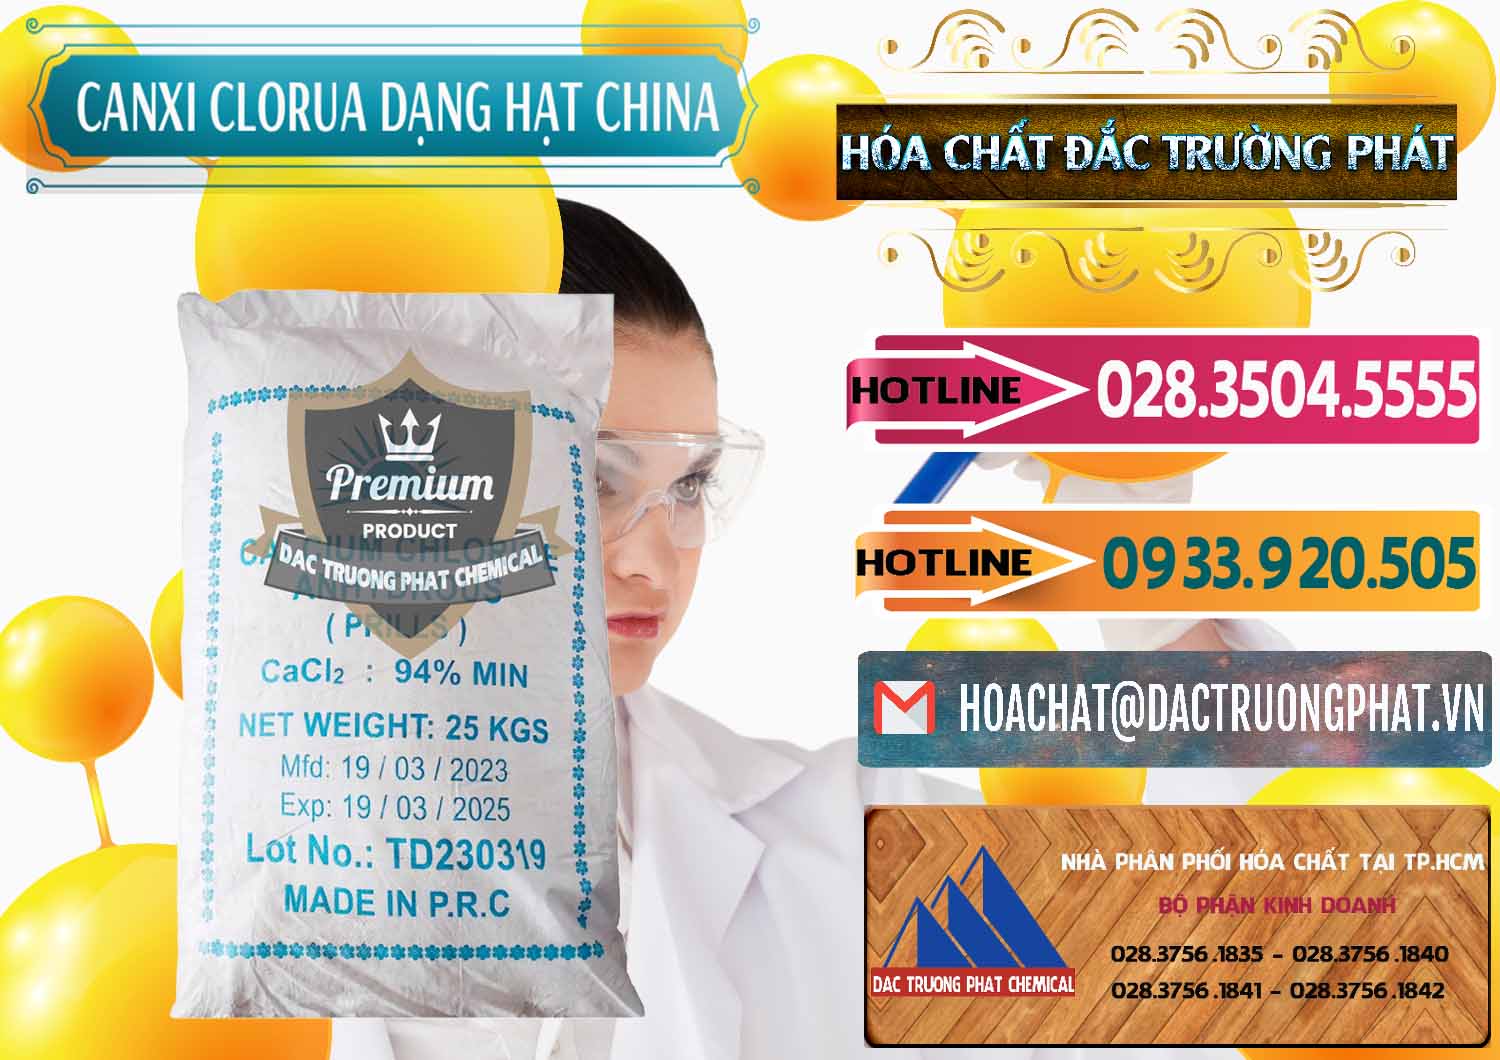 Nơi nhập khẩu và bán CaCl2 – Canxi Clorua 94% Dạng Hạt Trung Quốc China - 0373 - Công ty chuyên phân phối & cung ứng hóa chất tại TP.HCM - dactruongphat.vn